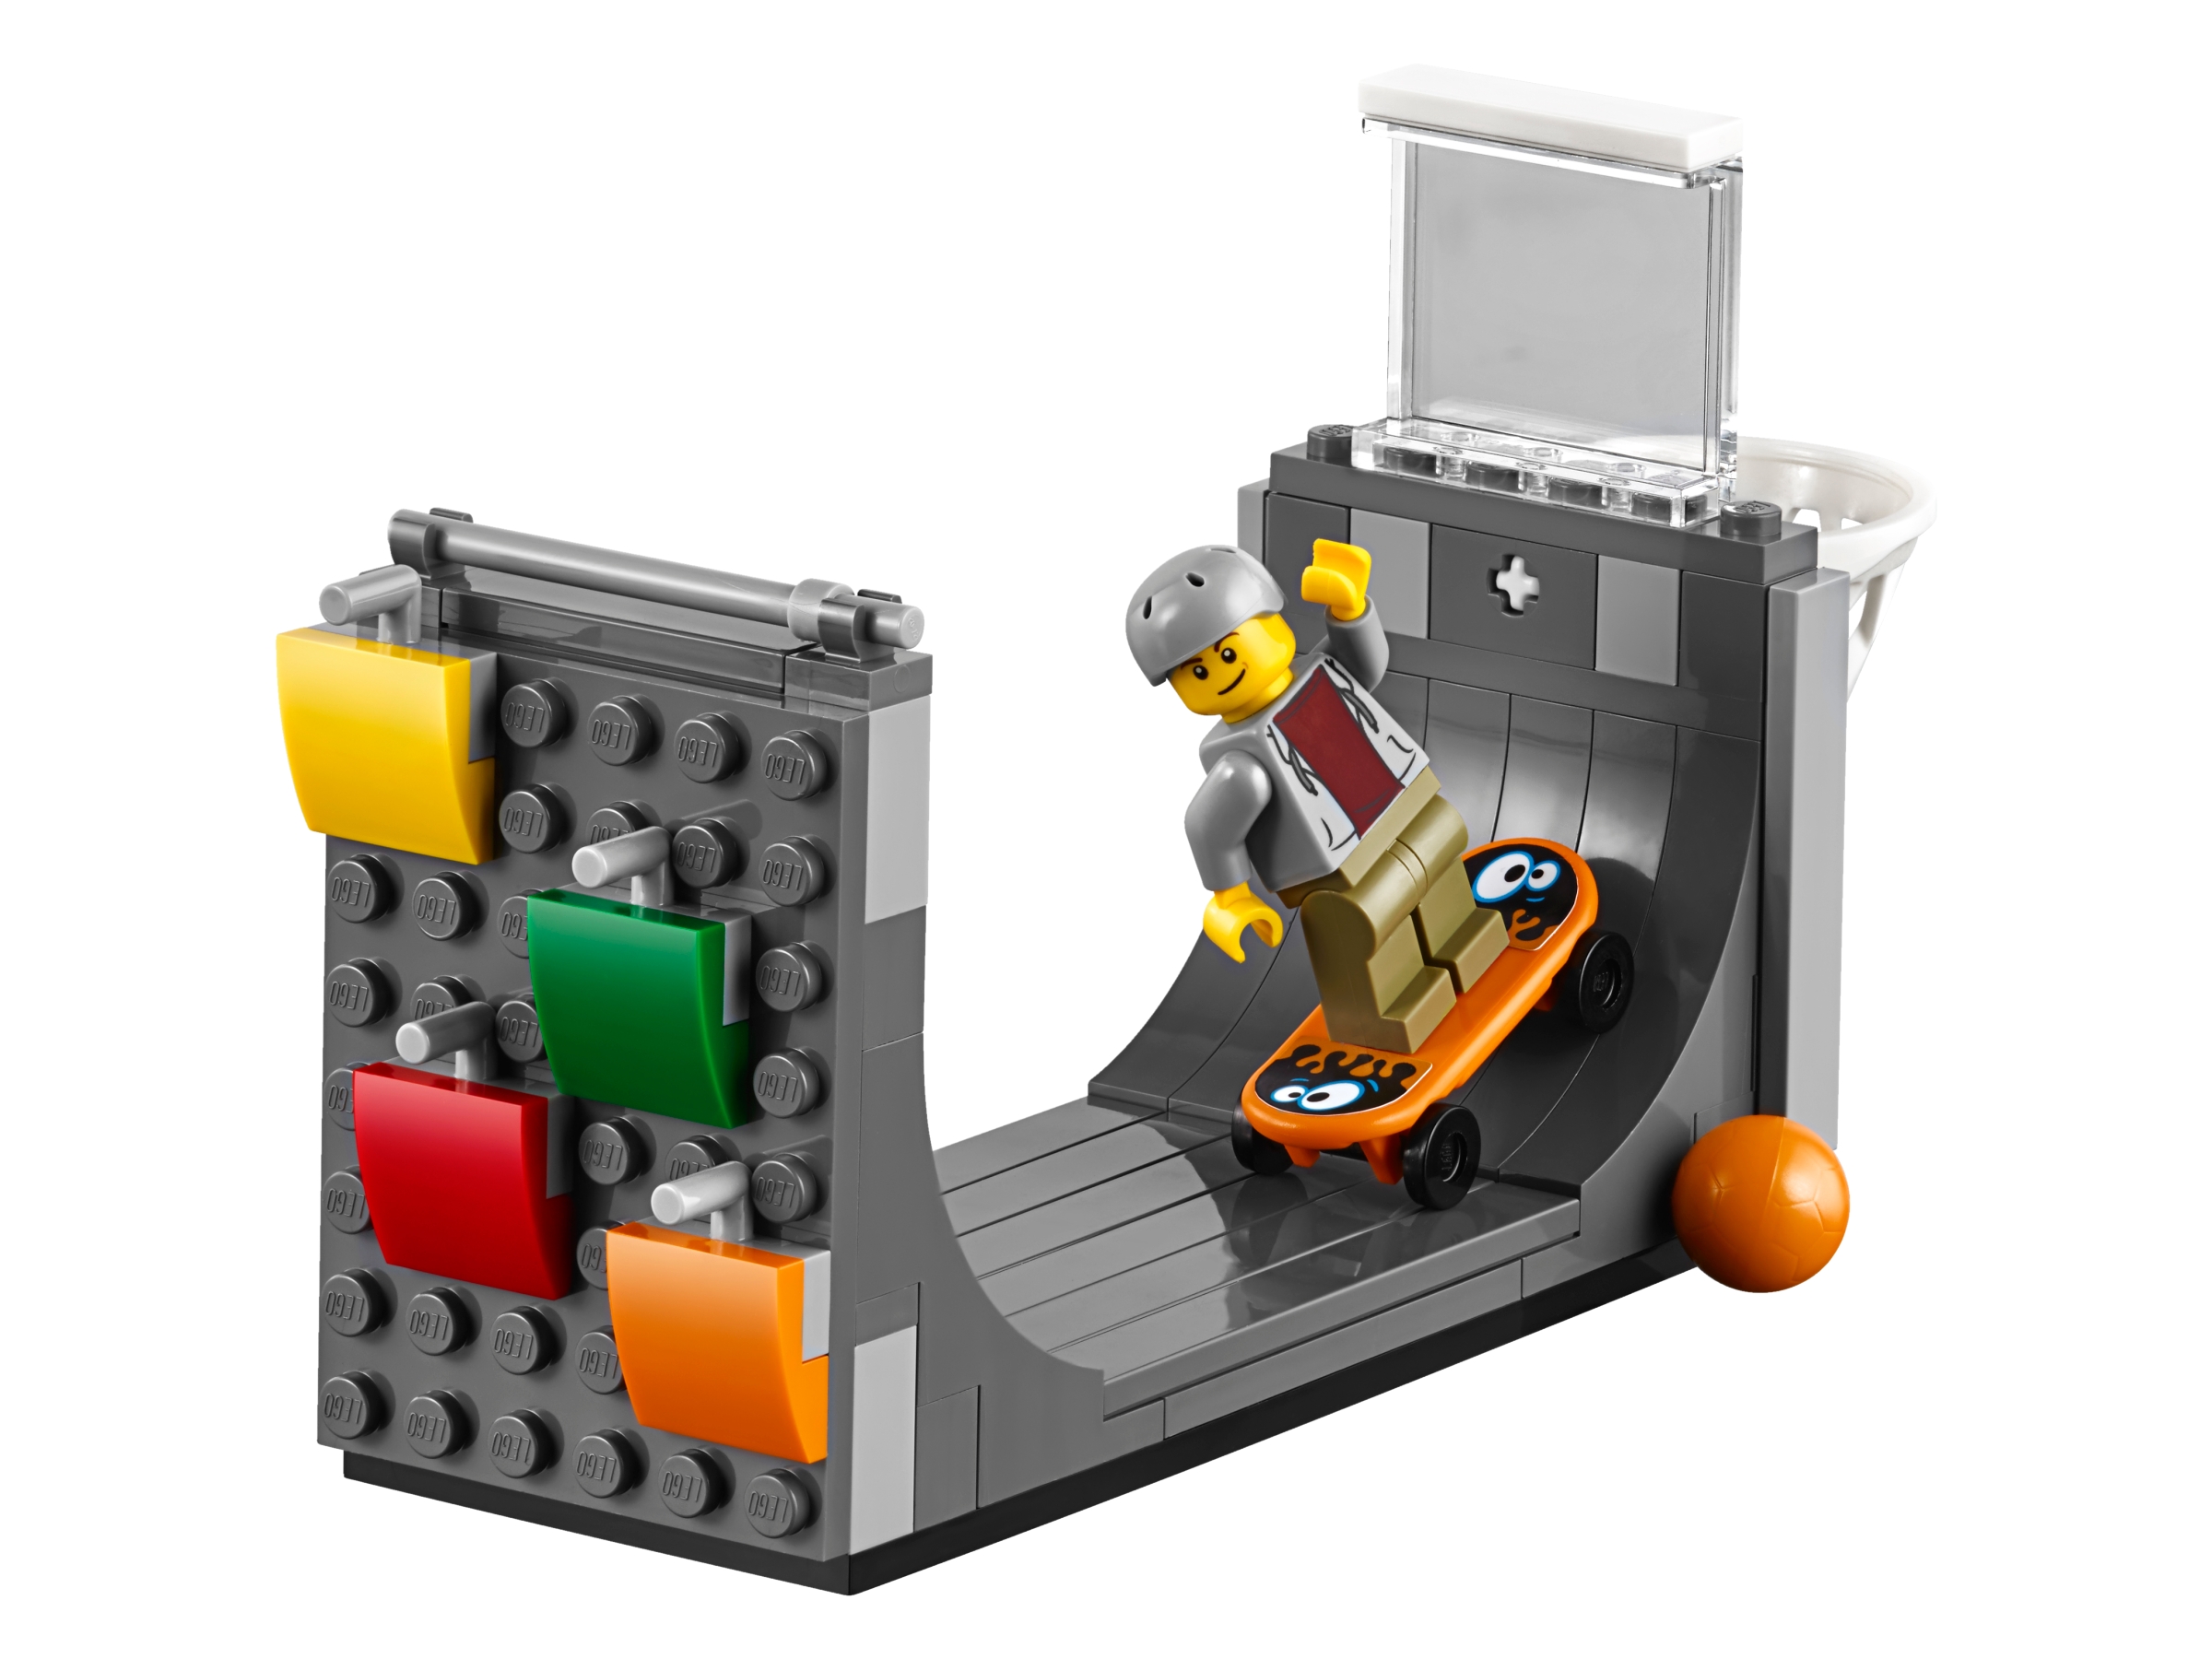 Gran capital 60200 | | Oficial LEGO®